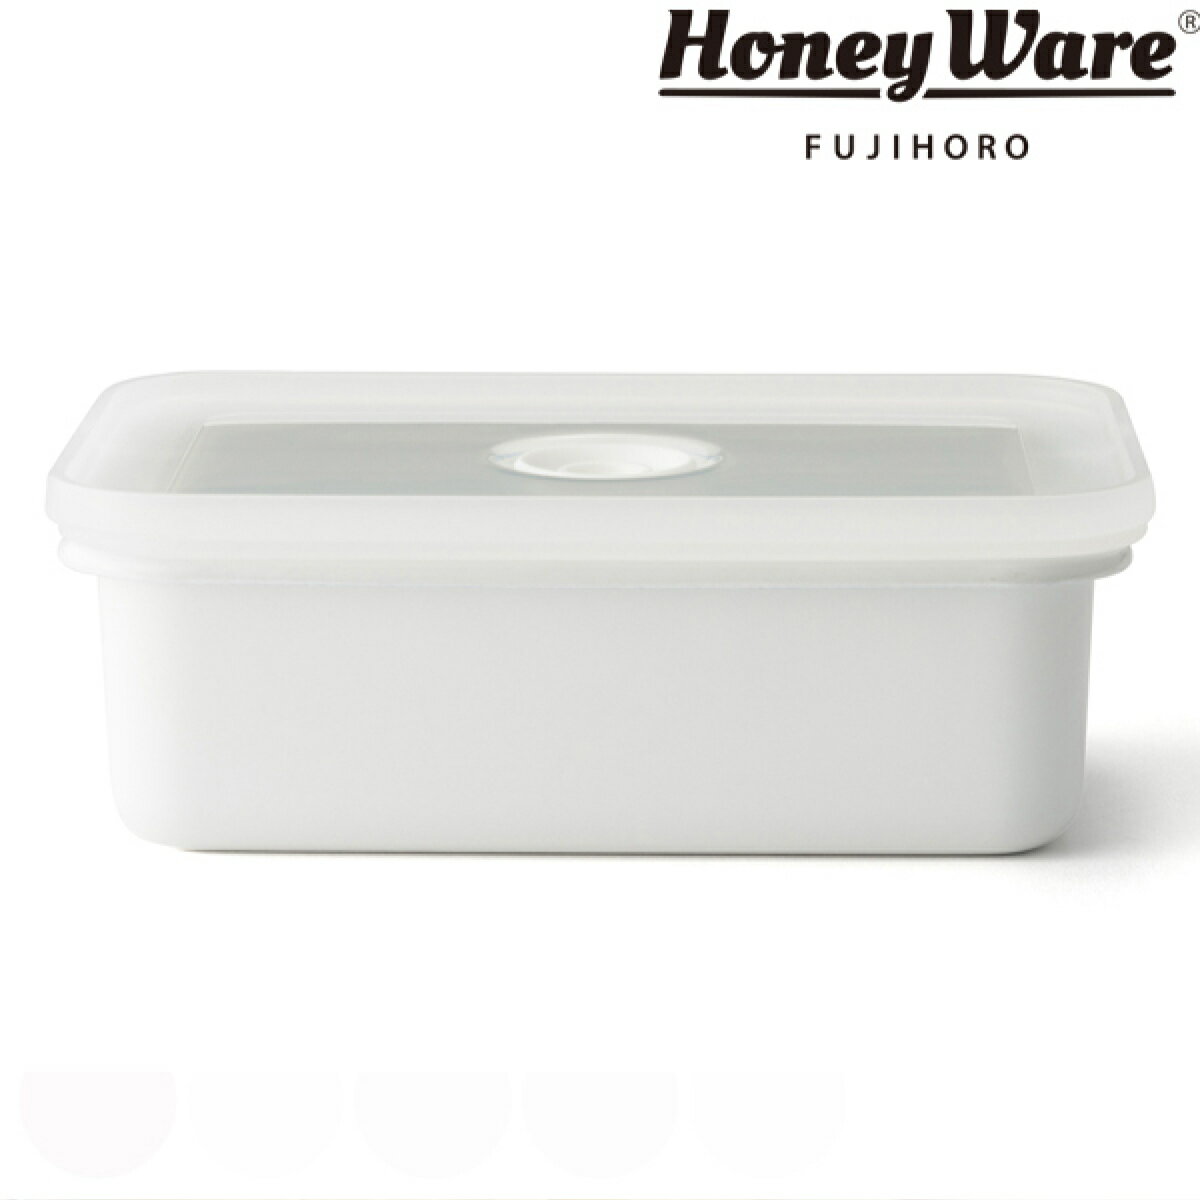 バターケース ホーロー製 450g HoneyWare 富士ホーロー （ バター容器 バター保存 バ ...